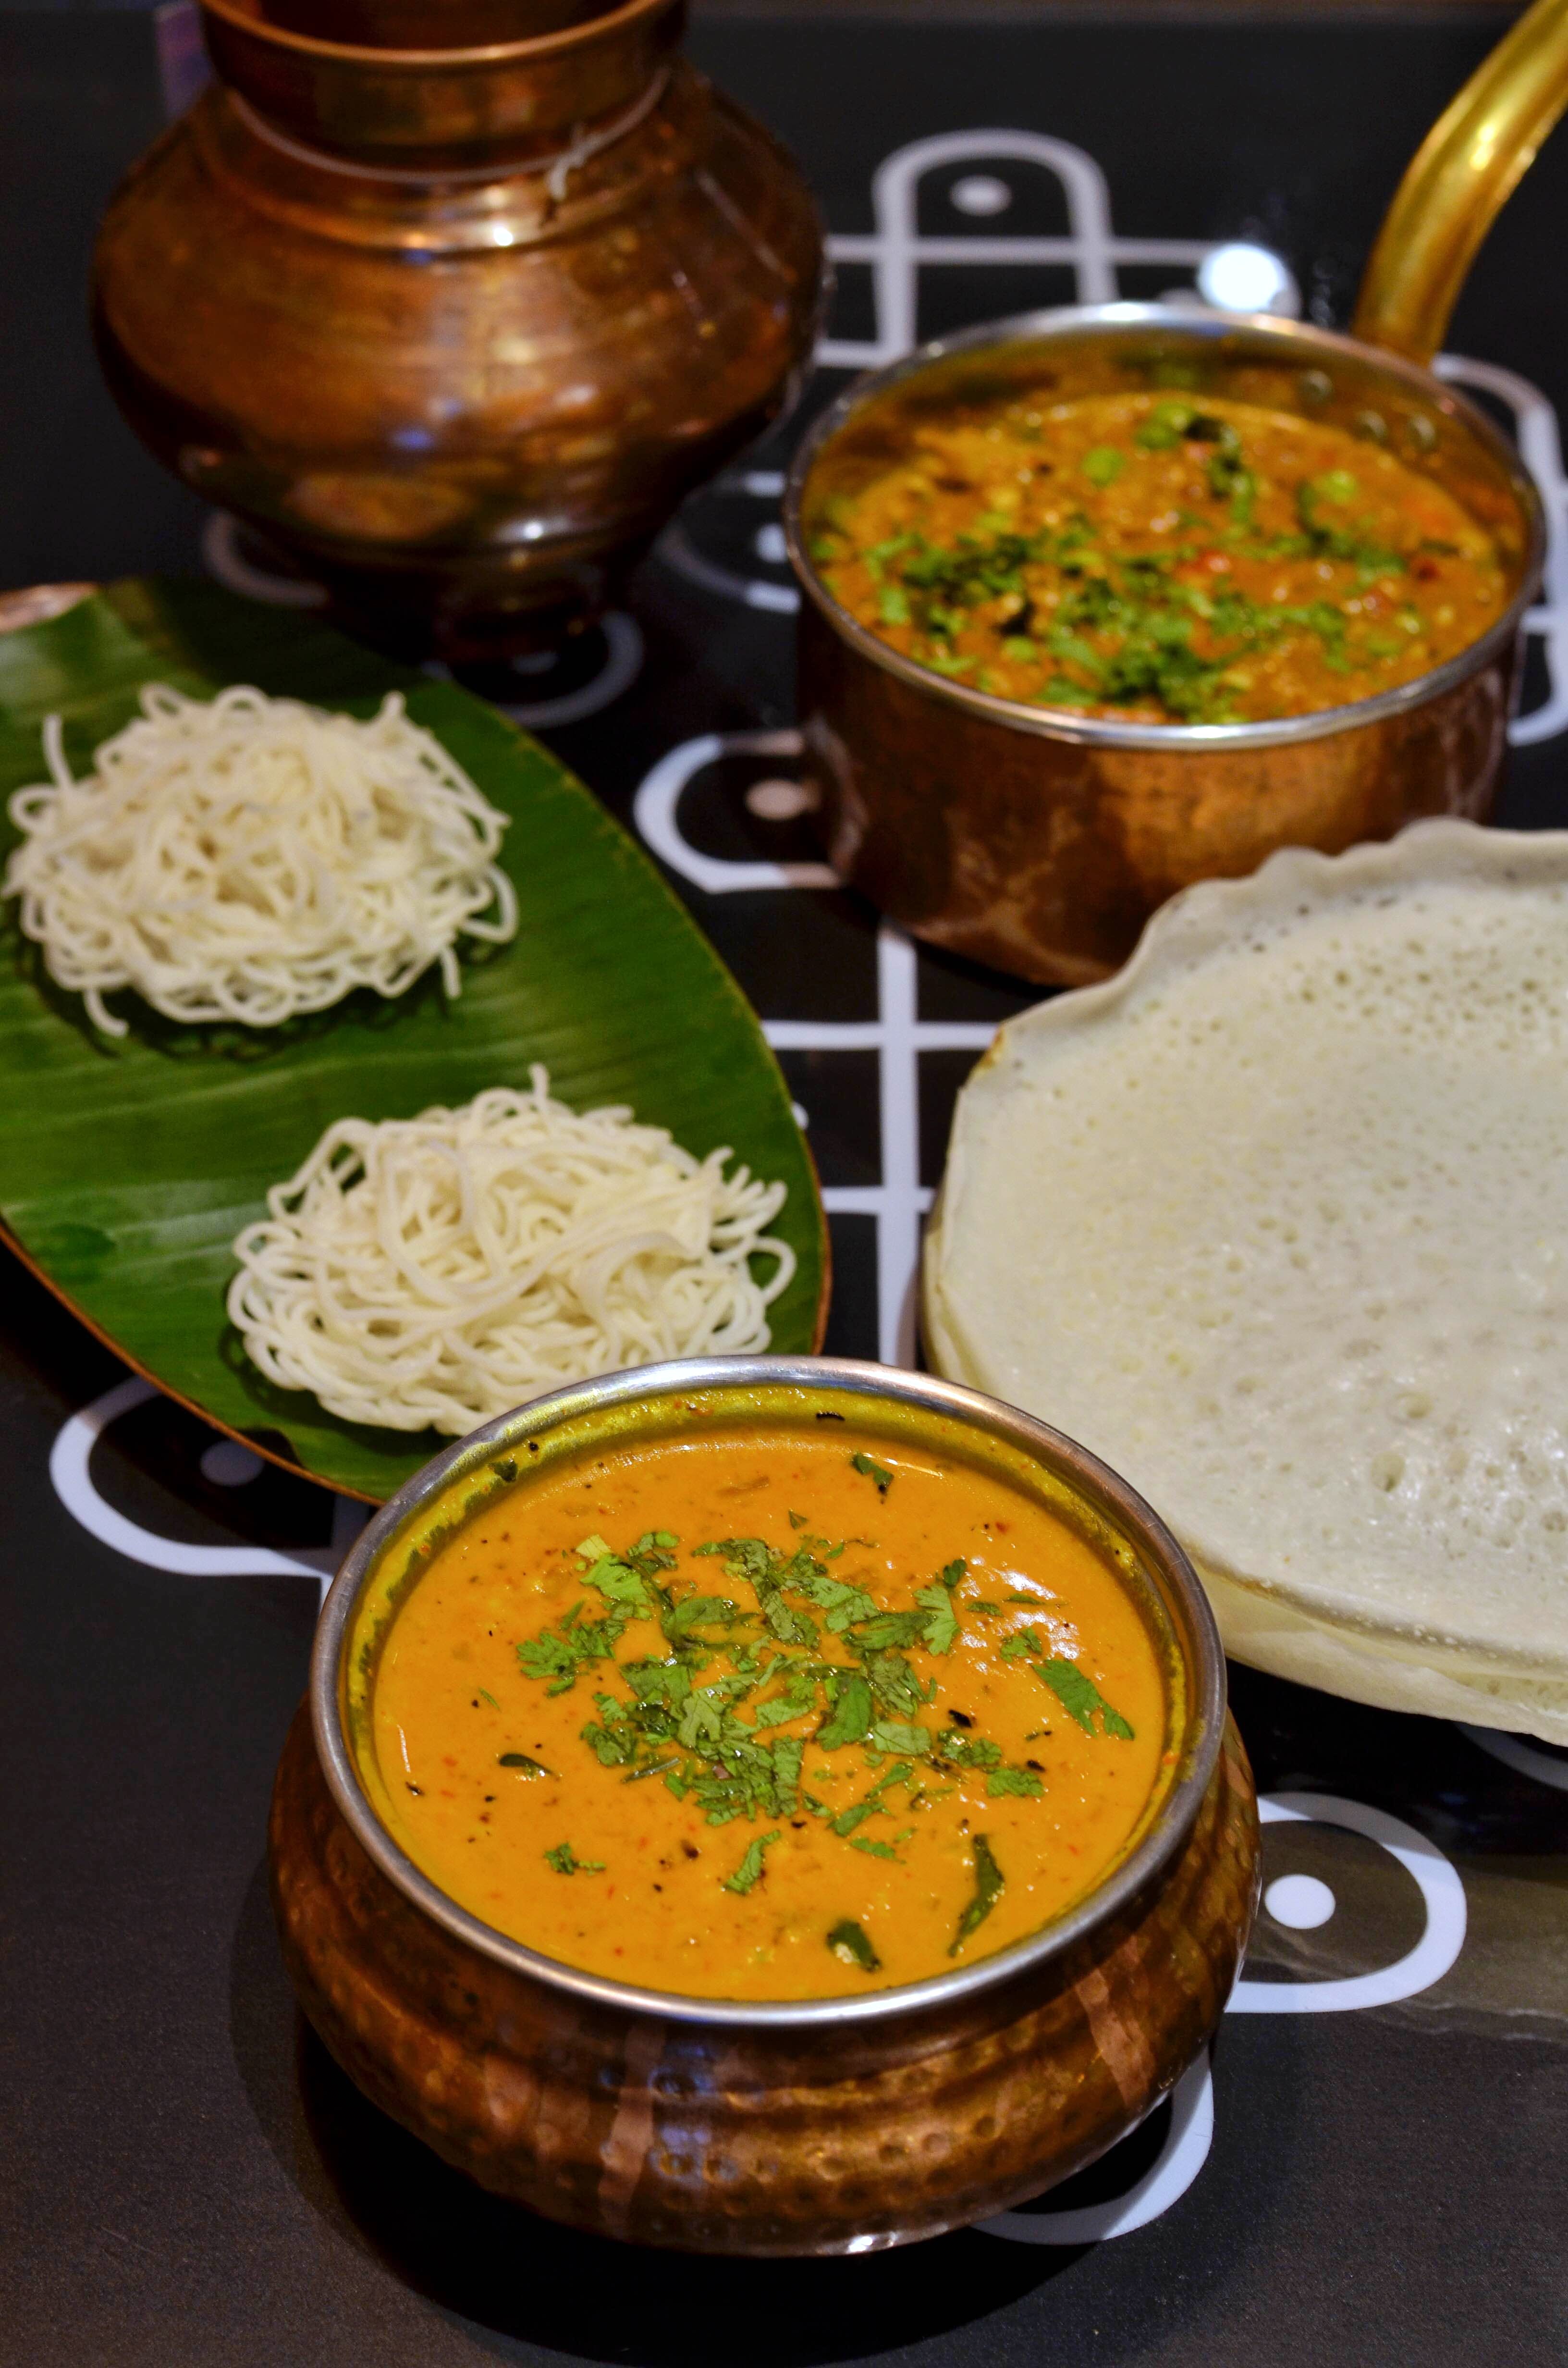 Dish,Food,Cuisine,Ingredient,Dal,Curry,Raita,Indian cuisine,Punjabi cuisine,Harira